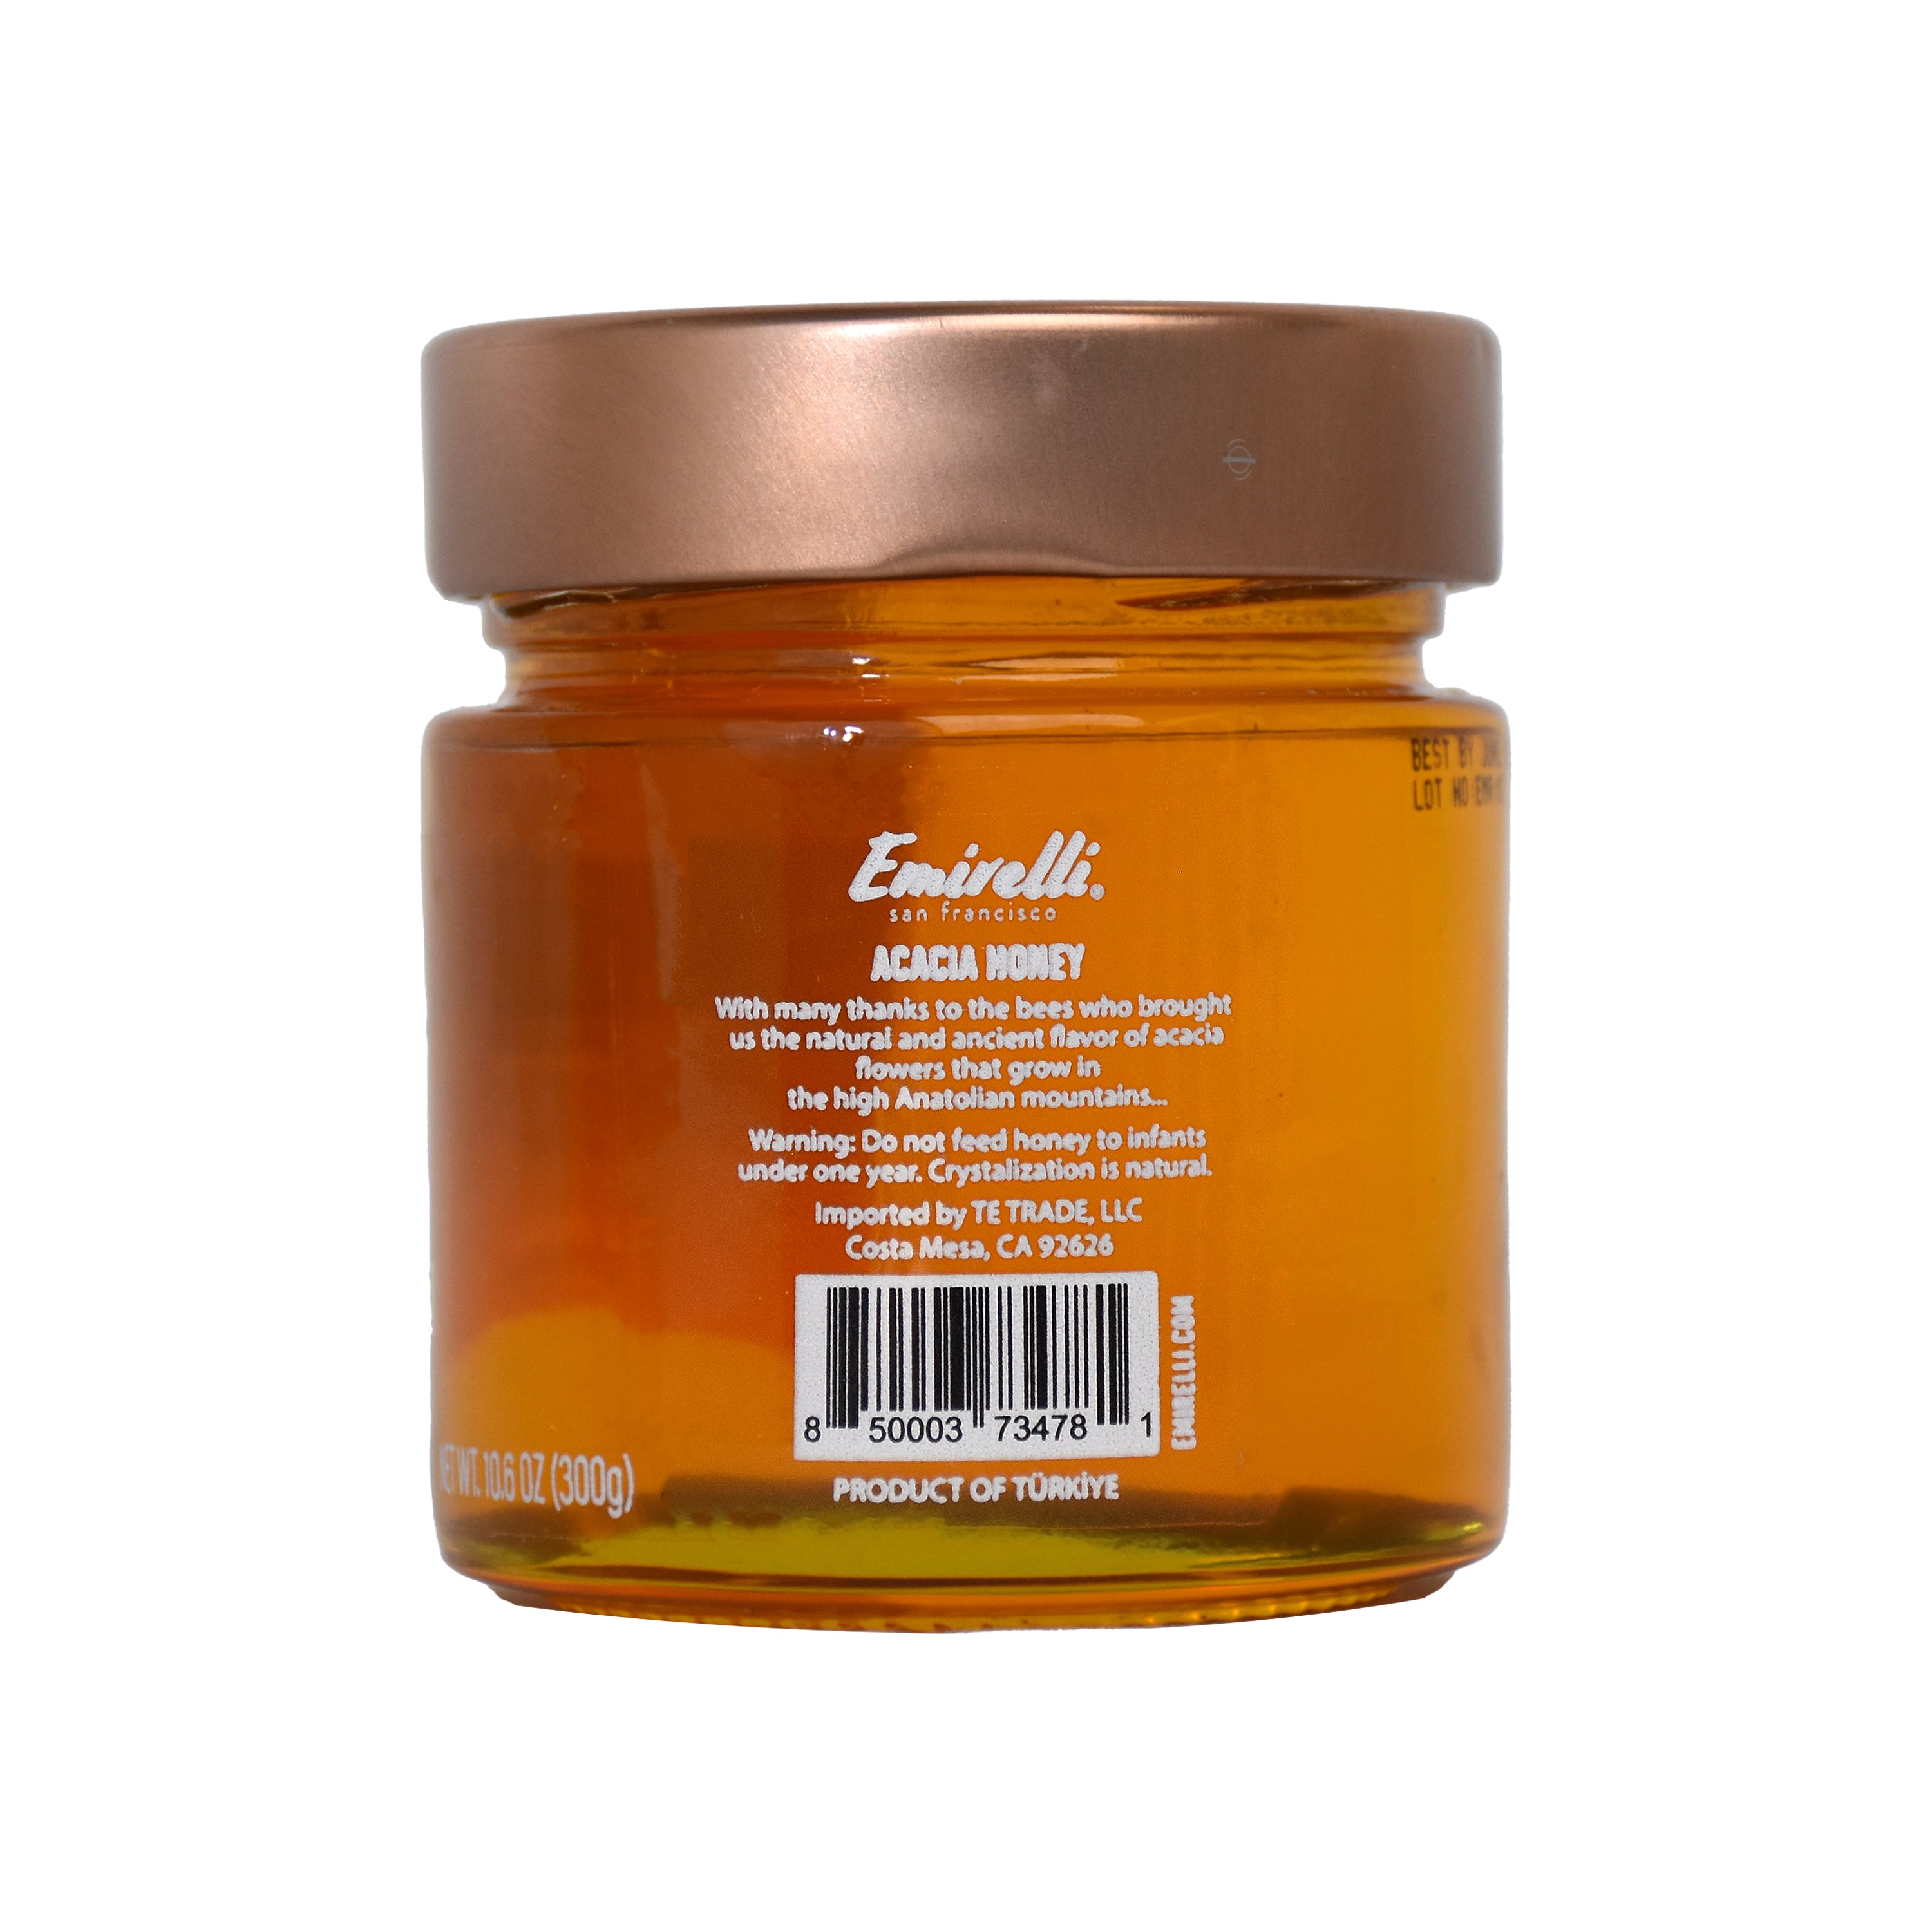 Emirelli Acacia Honey